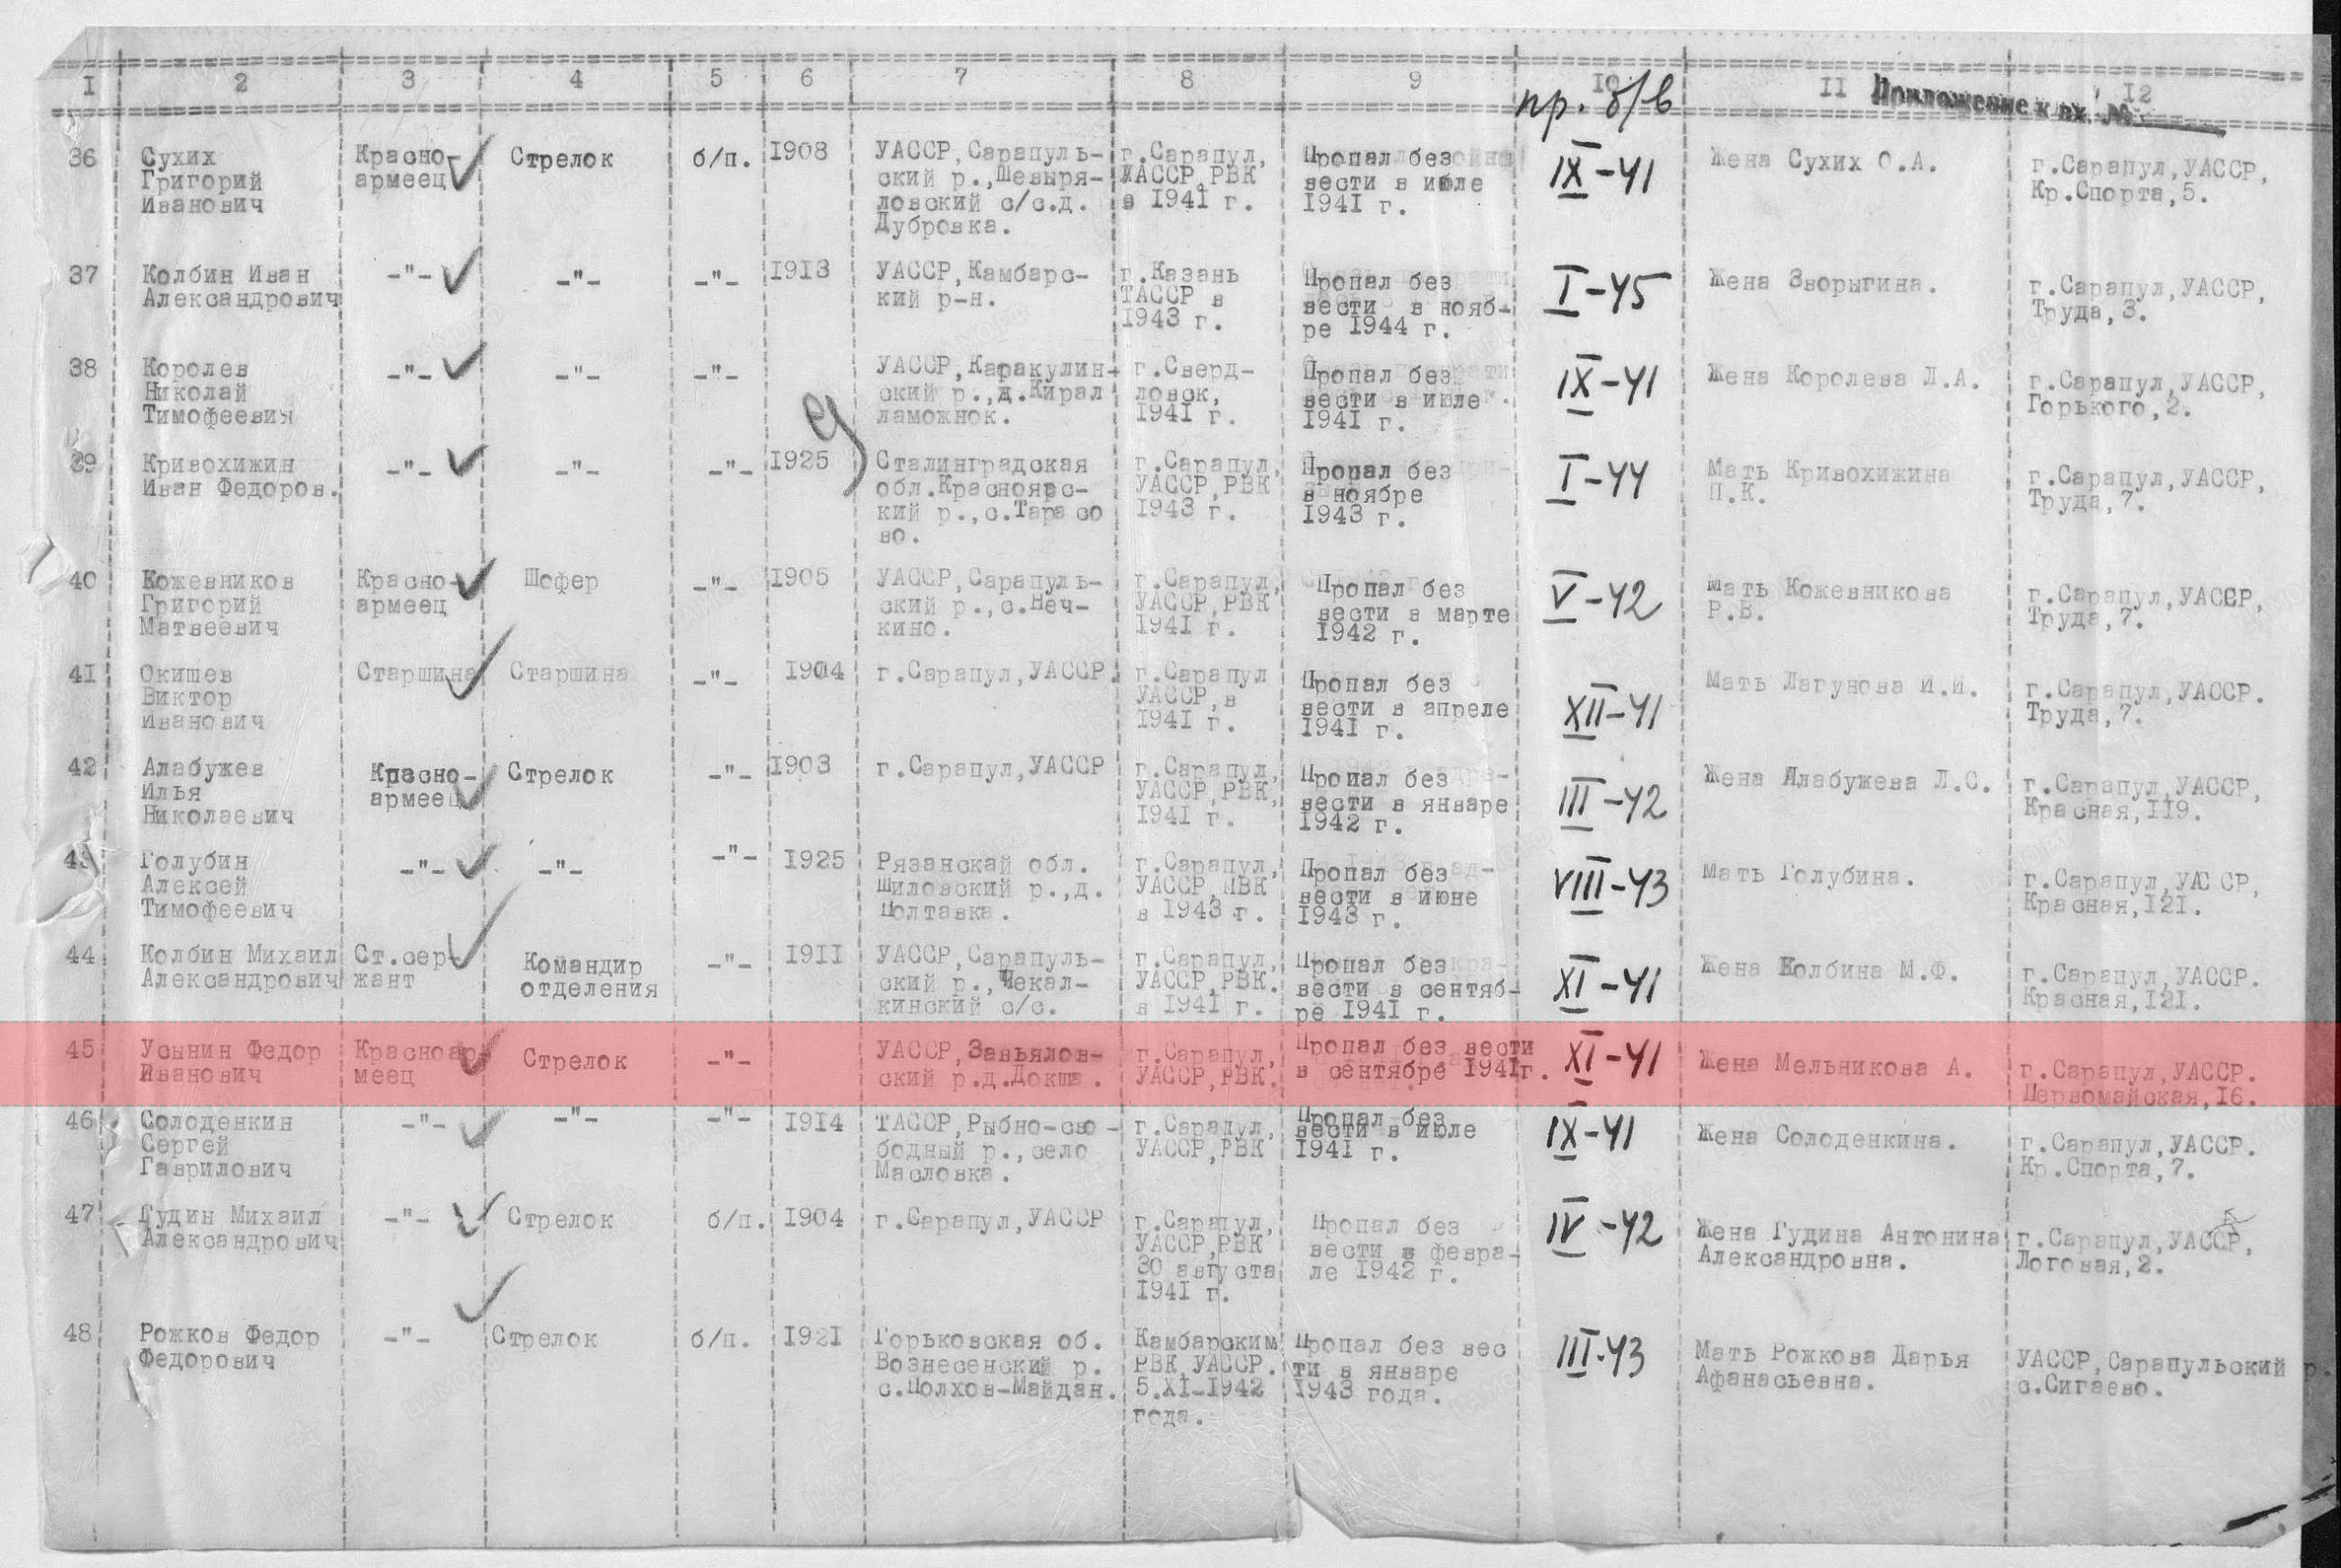 Лист донесения послевоенного периода, уточняющего потери. 13.07.1946